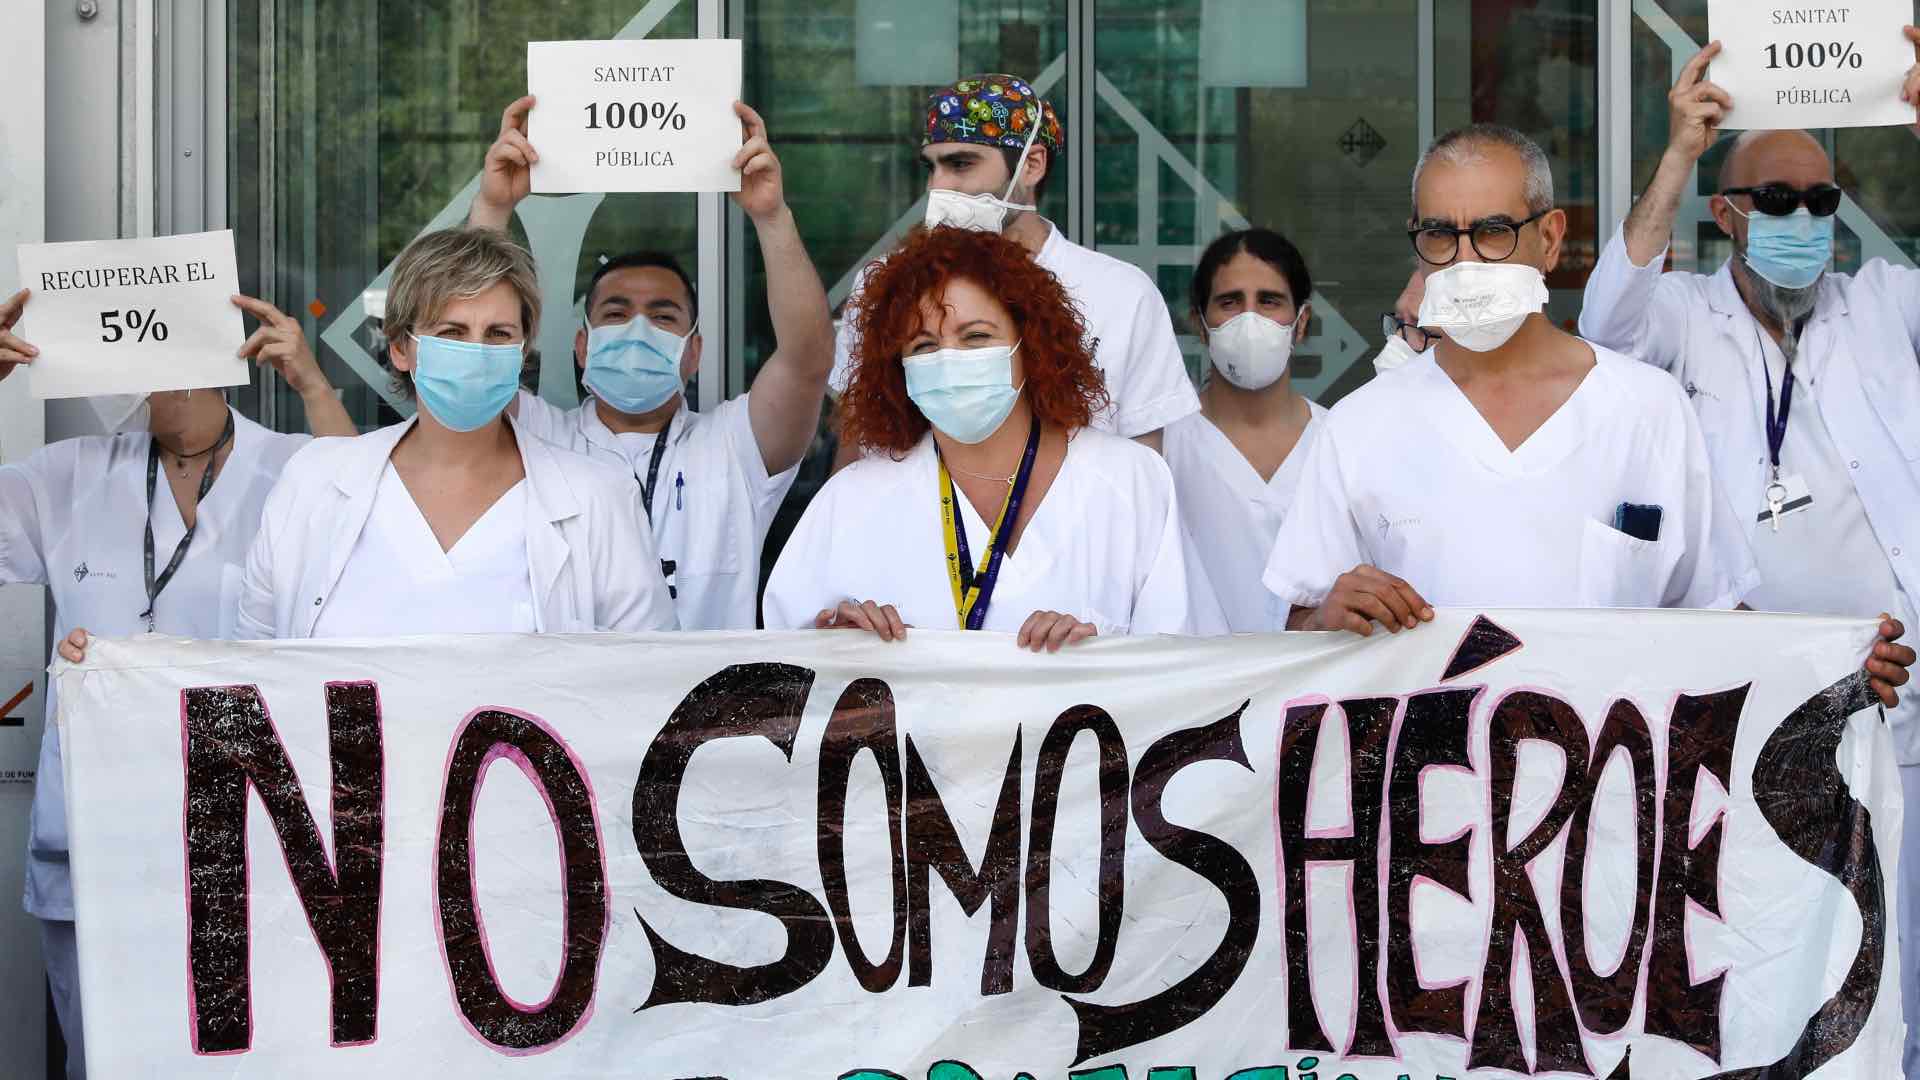 Directo |  El 5,2% de los españoles tiene anticuerpos de coronavirus, según el estudio de seroprevalencia